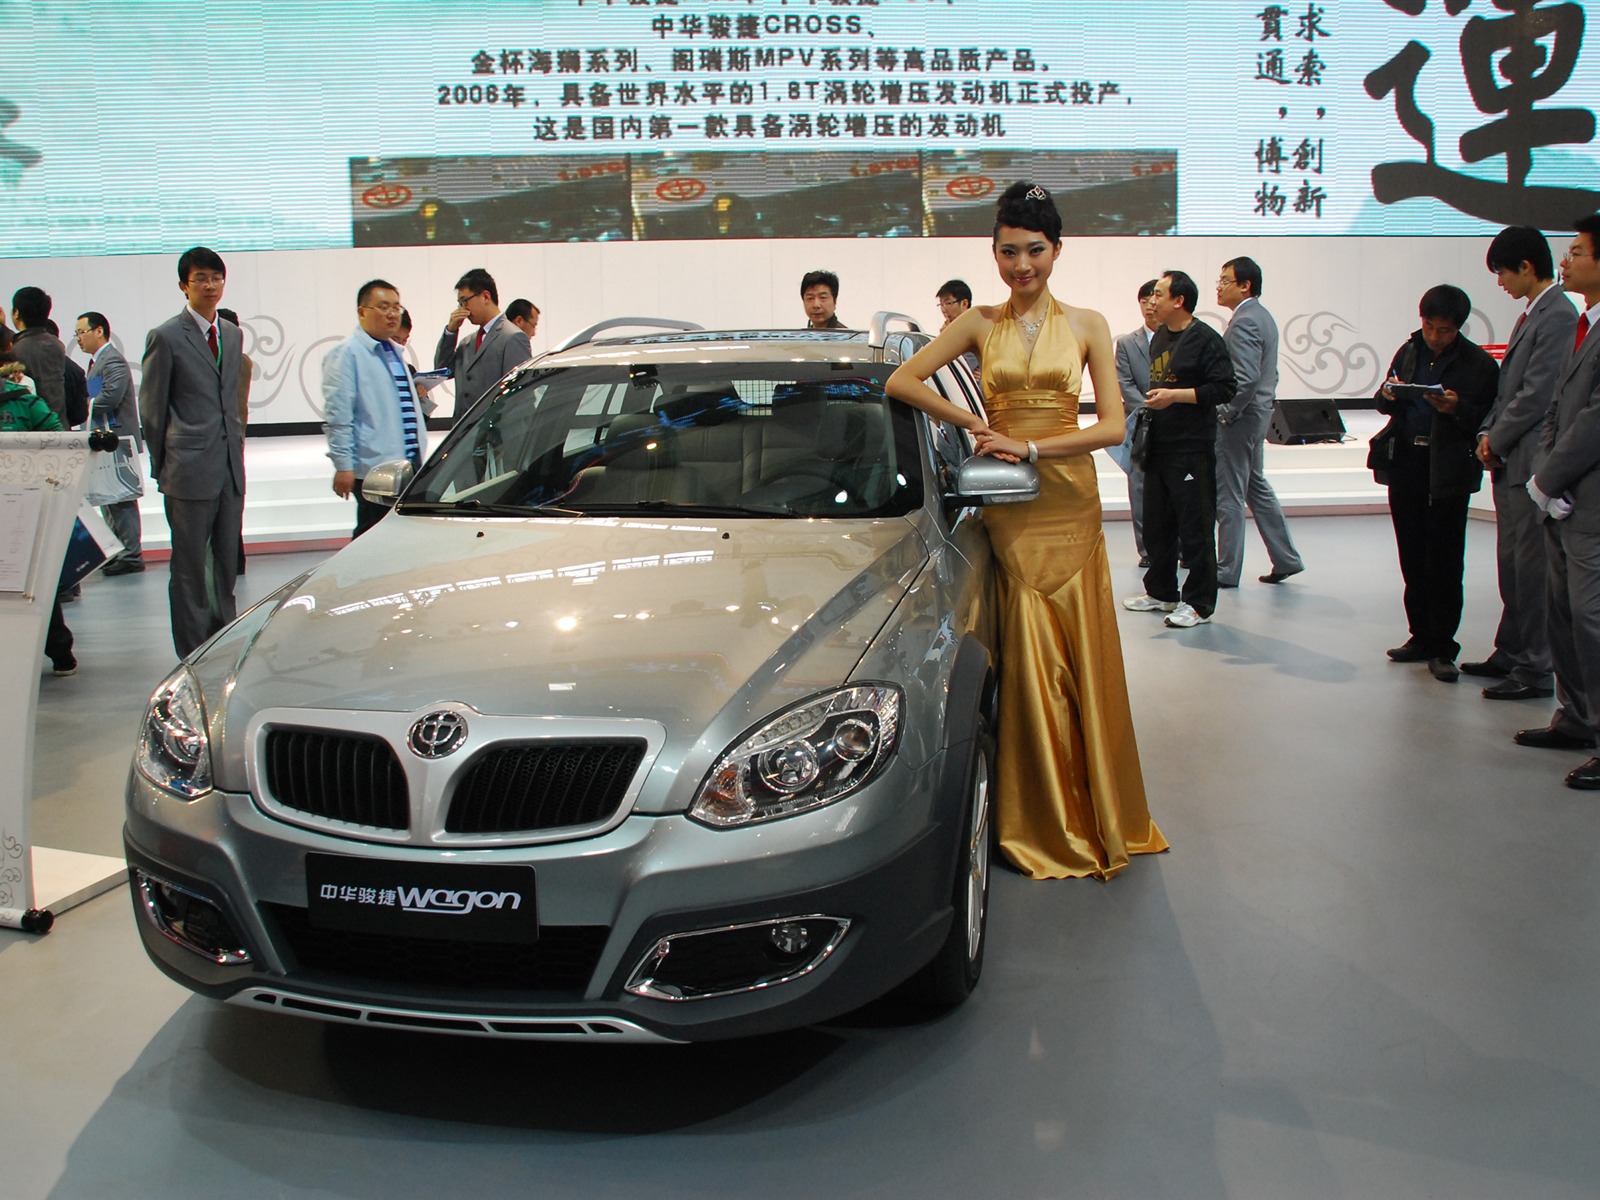 2010 Beijing International Auto Show (1) (z321x123 works) #18 - 1600x1200